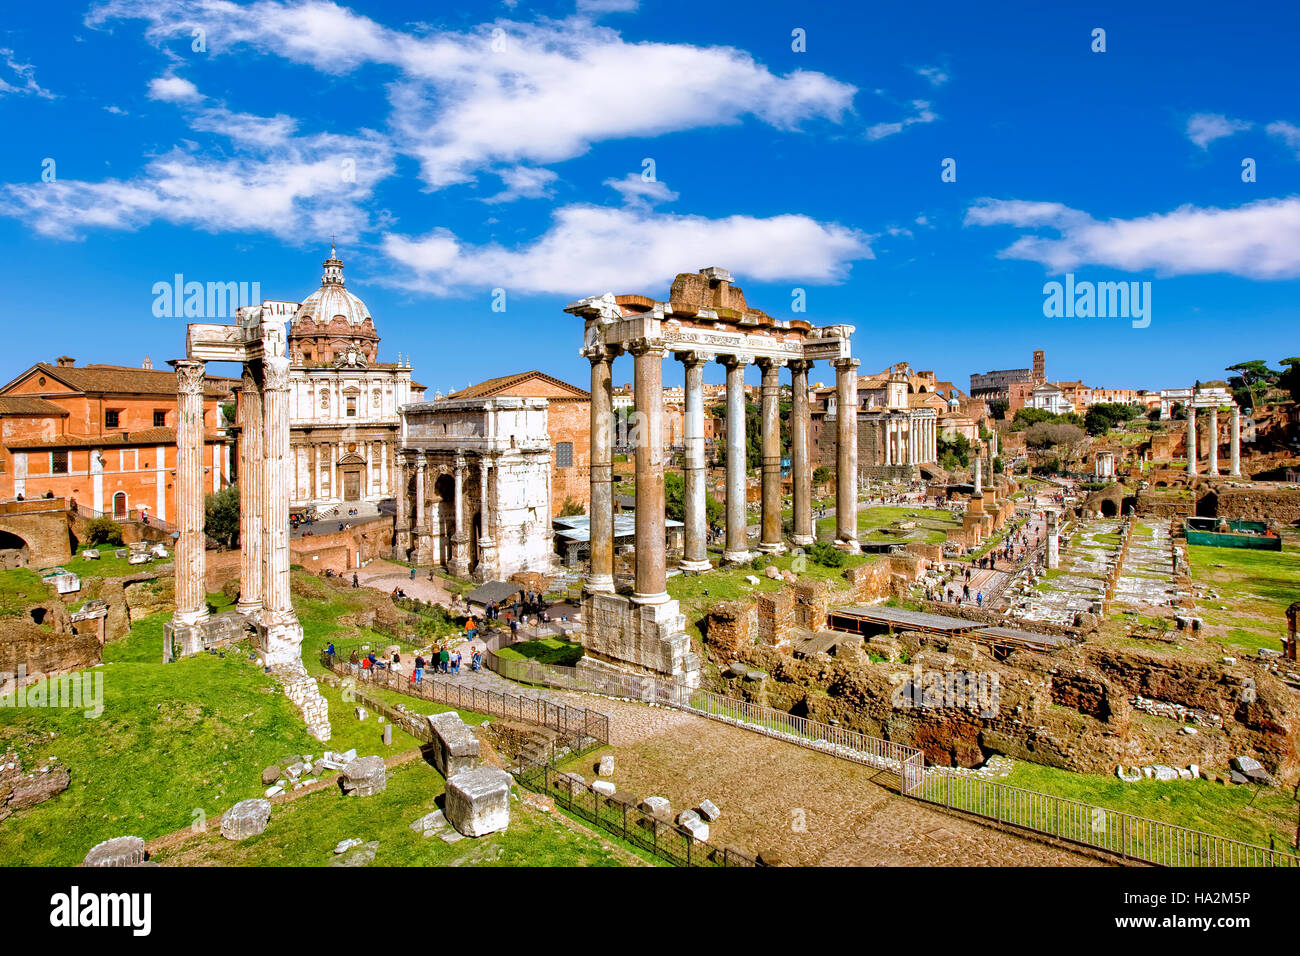 Le forum romain, Rome, Italie Banque D'Images